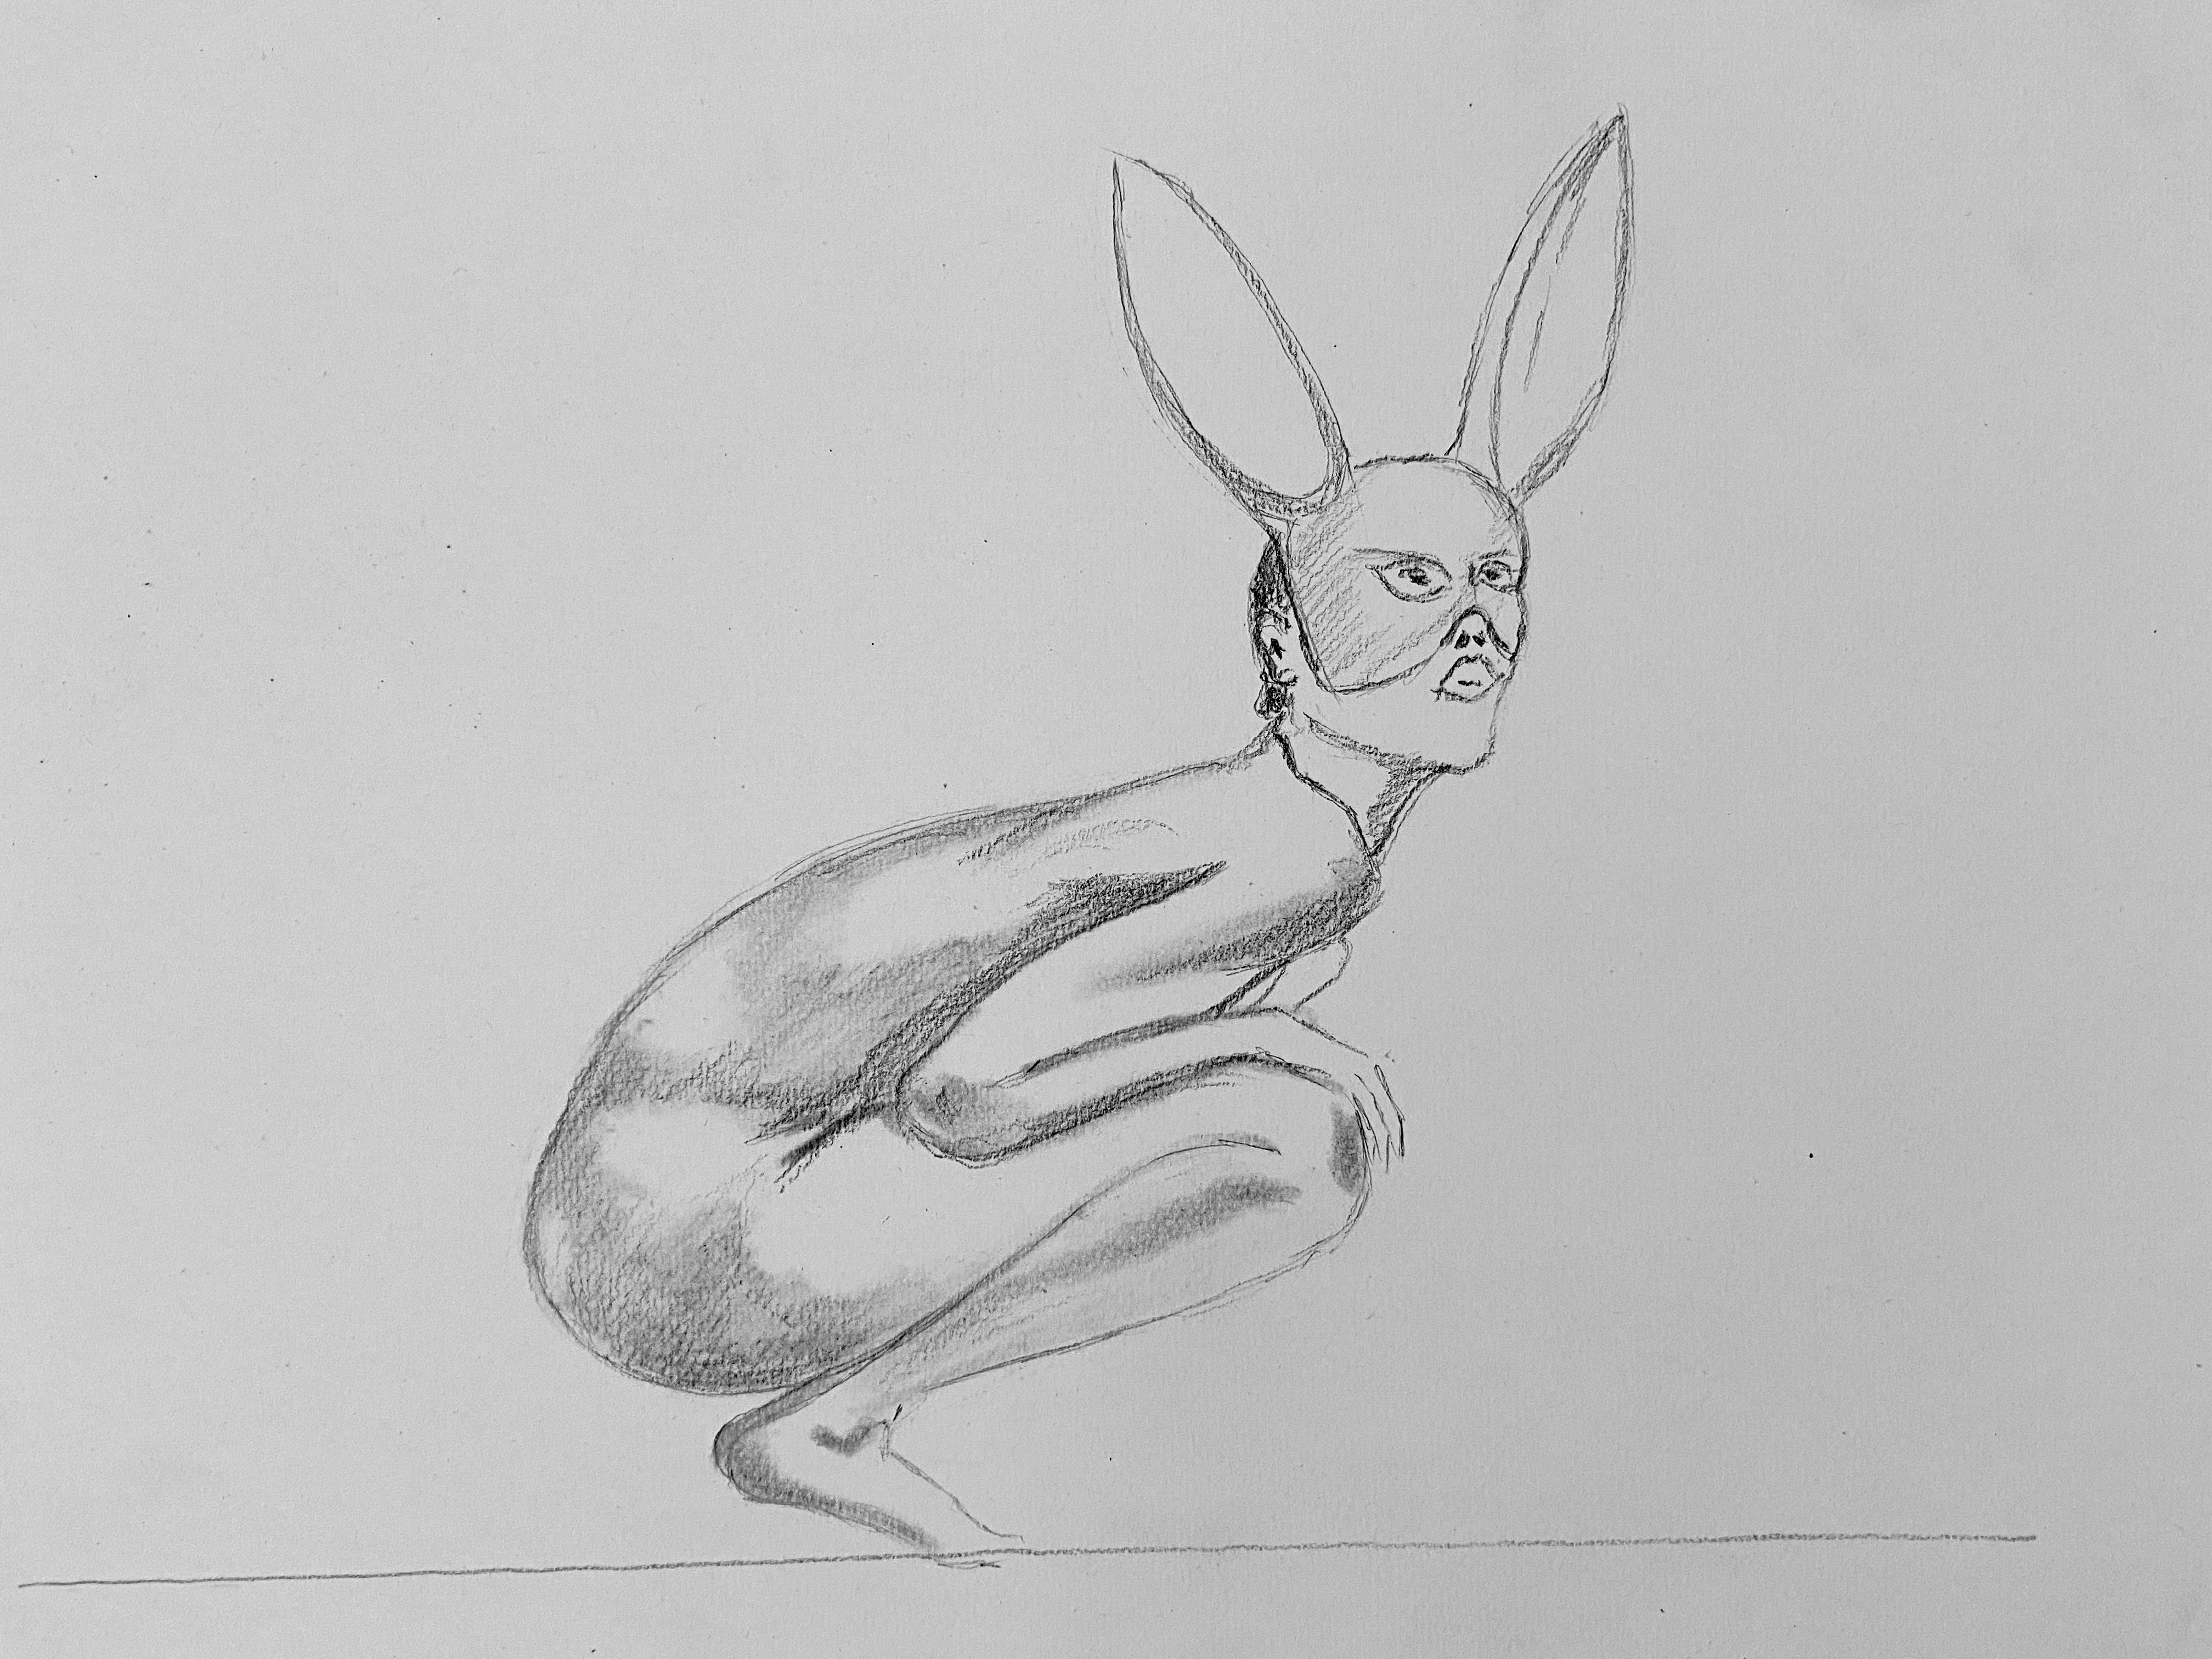  Dessin au crayon papier femme lapin  cours de dessin 